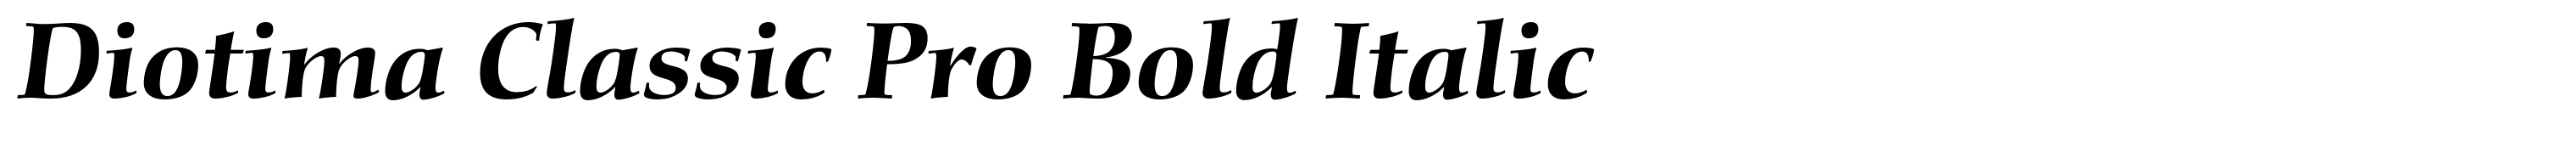 Diotima Classic Pro Bold Italic